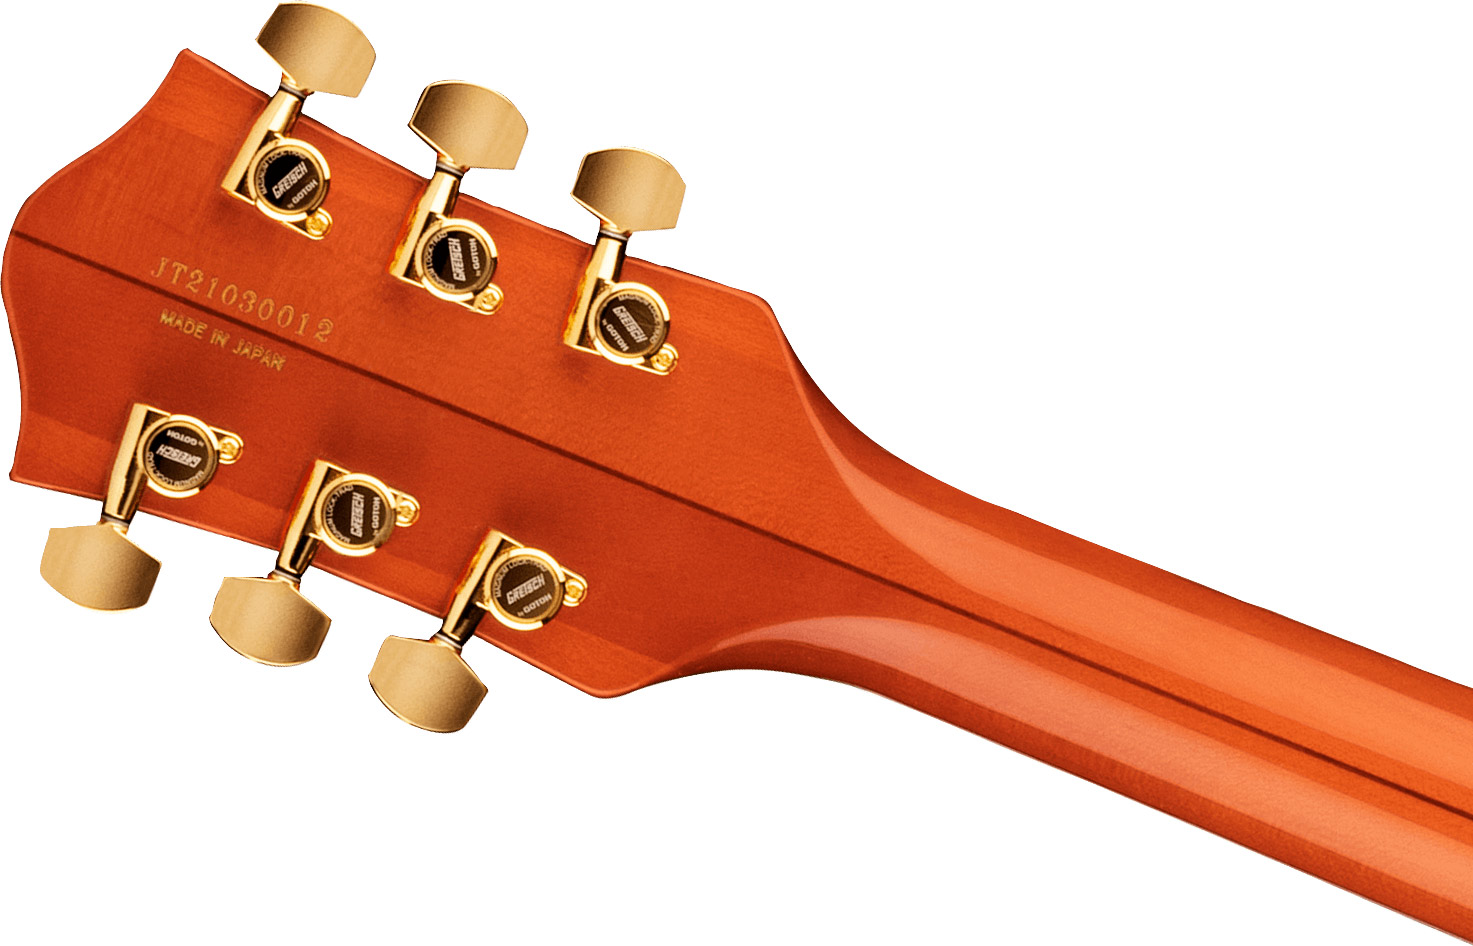 Gretsch G6120tg Players Edition Nashville Pro Jap Bigsby Eb - Orange Stain - Hollow bodytock elektrische gitaar - Variation 3